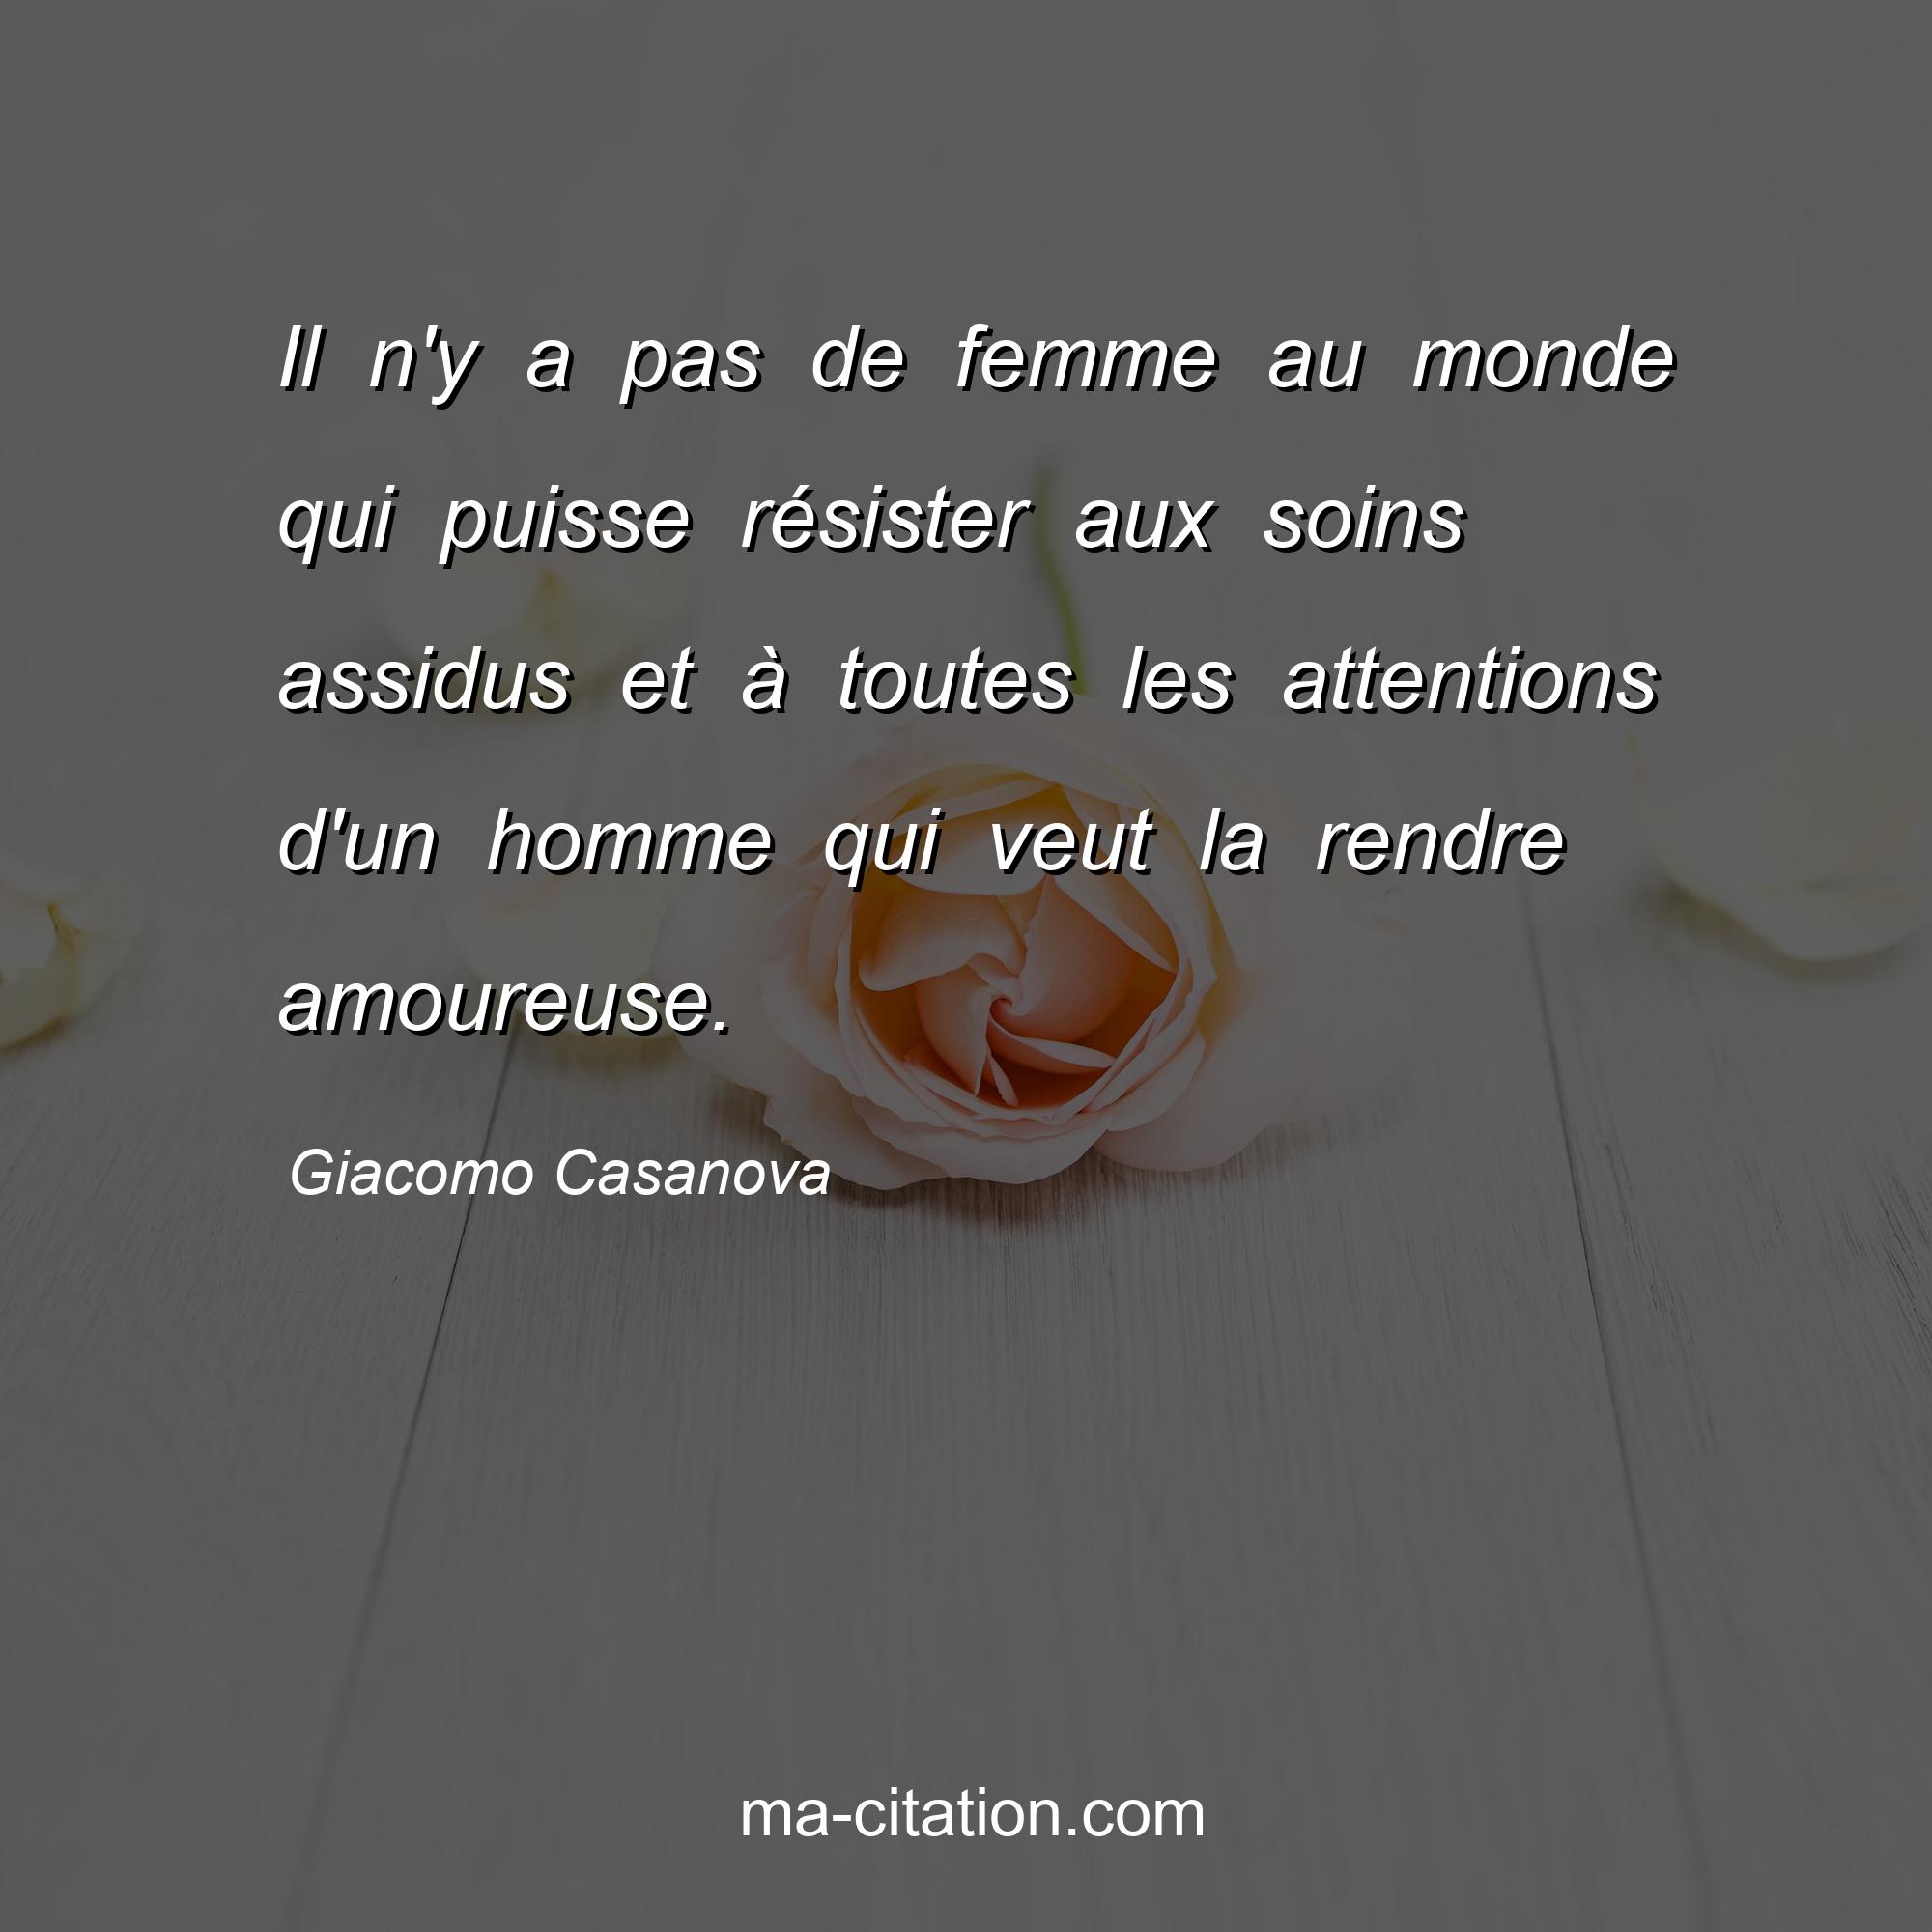 Giacomo Casanova : Il n'y a pas de femme au monde qui puisse résister aux soins assidus et à toutes les attentions d'un homme qui veut la rendre amoureuse.